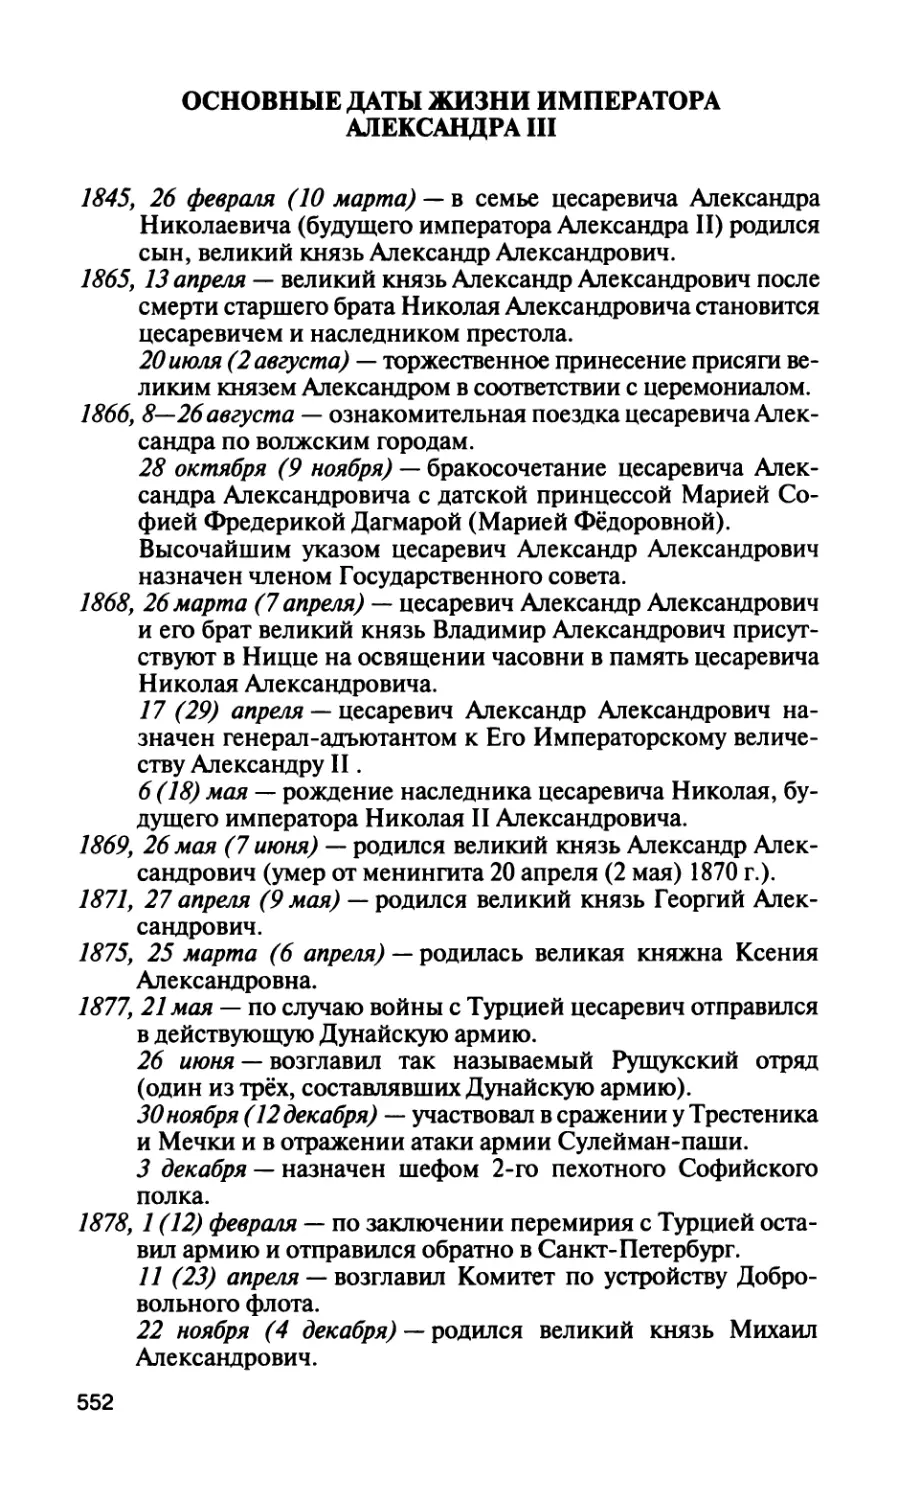 Основные даты жизни императора Александра III